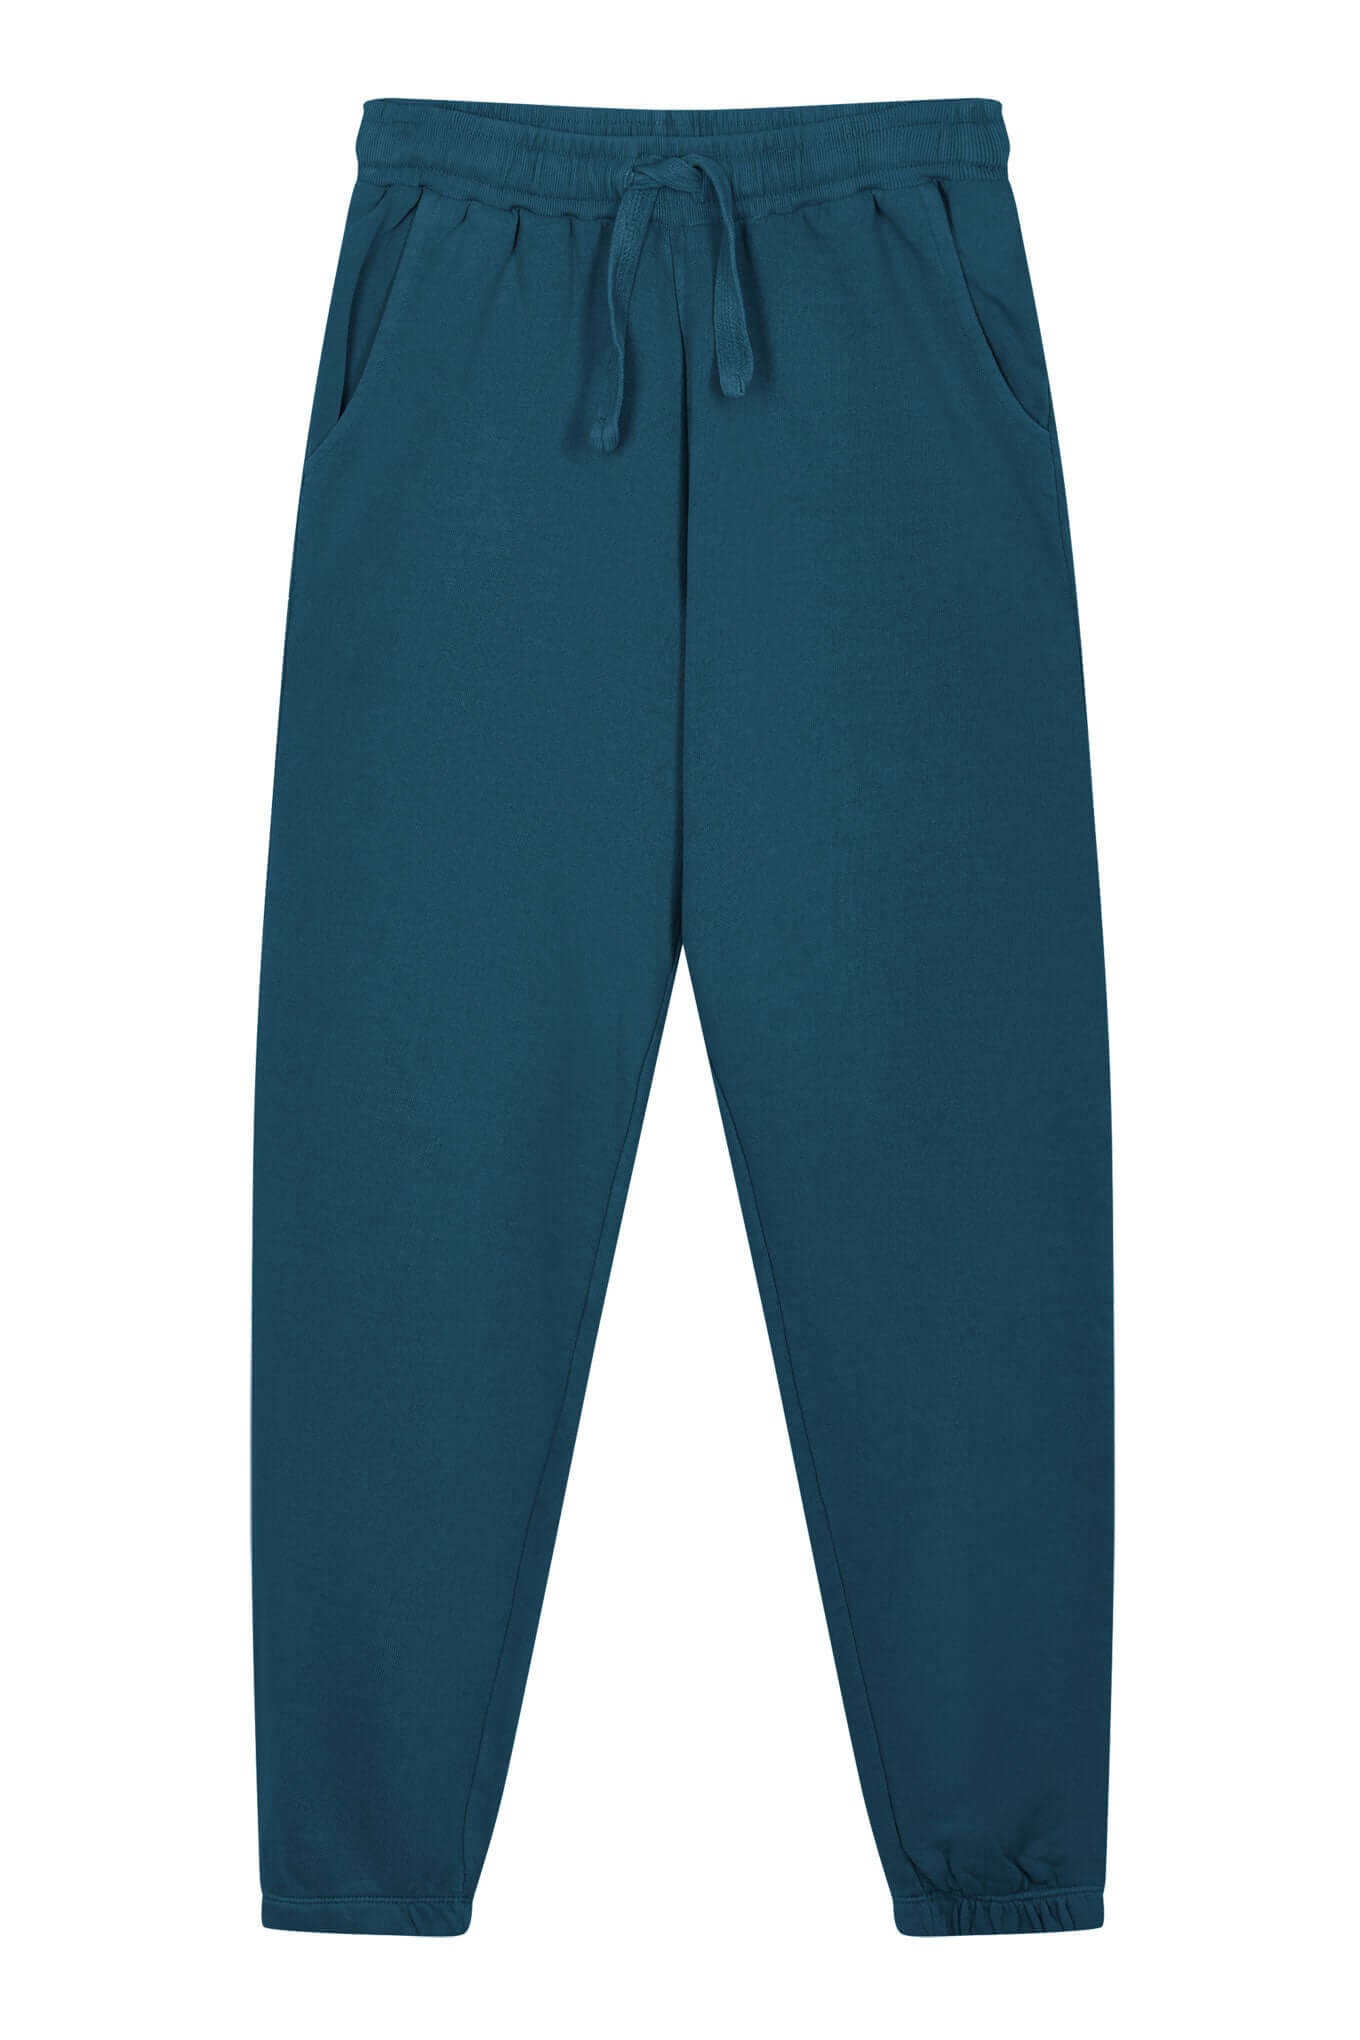 Trousers - ADAM Men's - GOTS Organic Cotton Traksuit Teal Blue